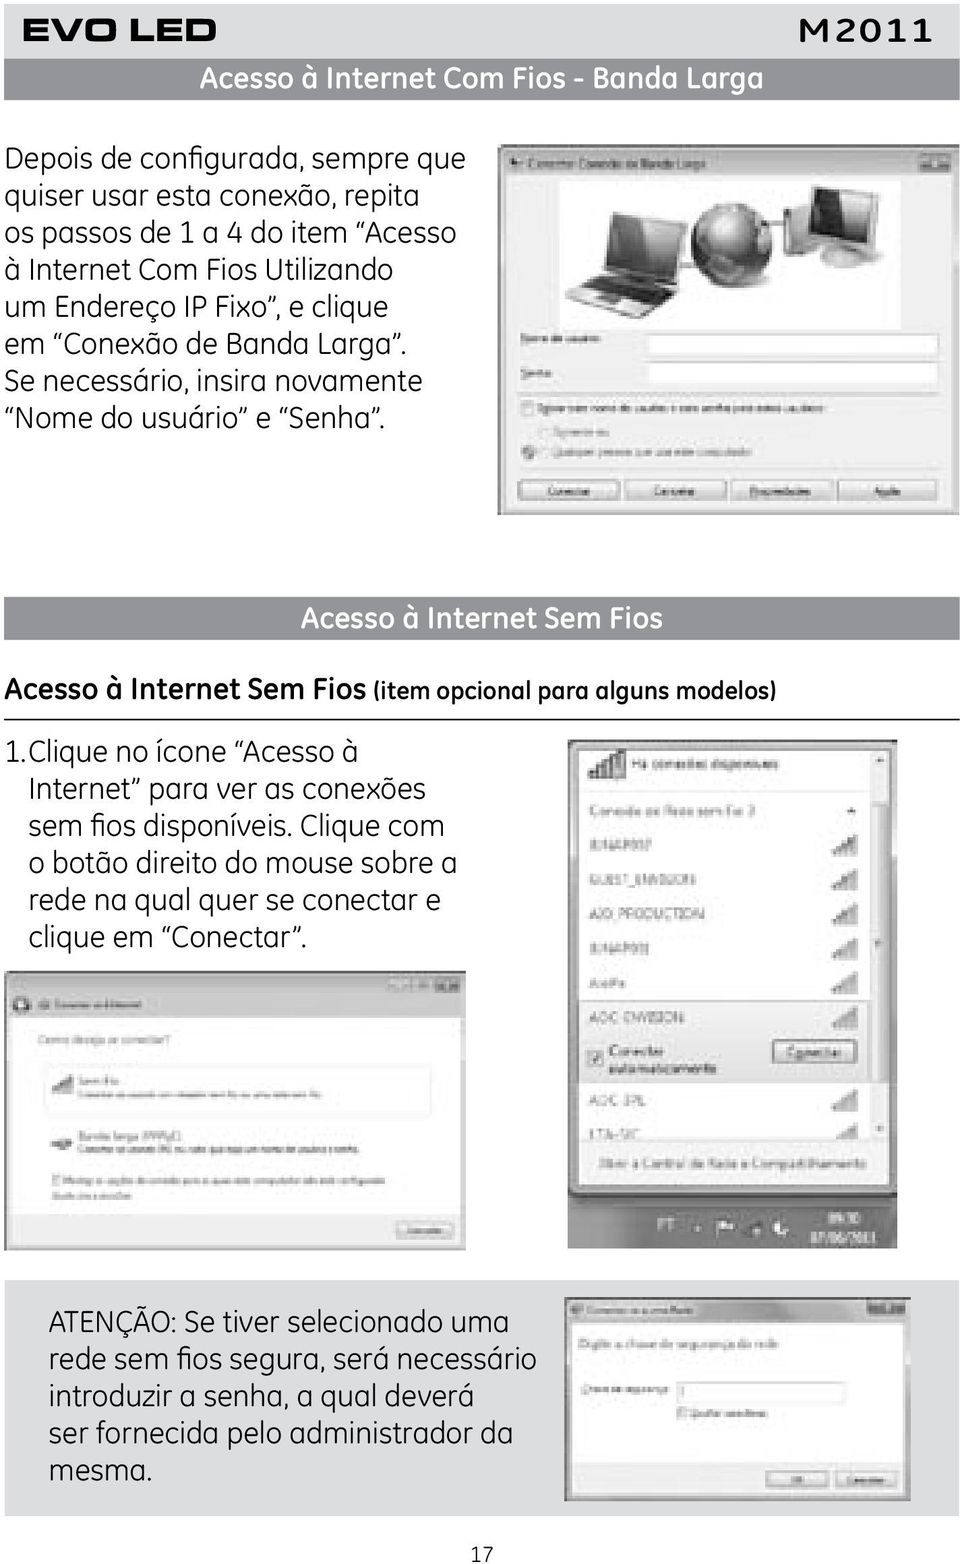 Acesso à Internet Sem Fios Acesso à Internet Sem Fios (item opcional para alguns modelos) 1. Clique no ícone Acesso à Internet para ver as conexões sem fios disponíveis.